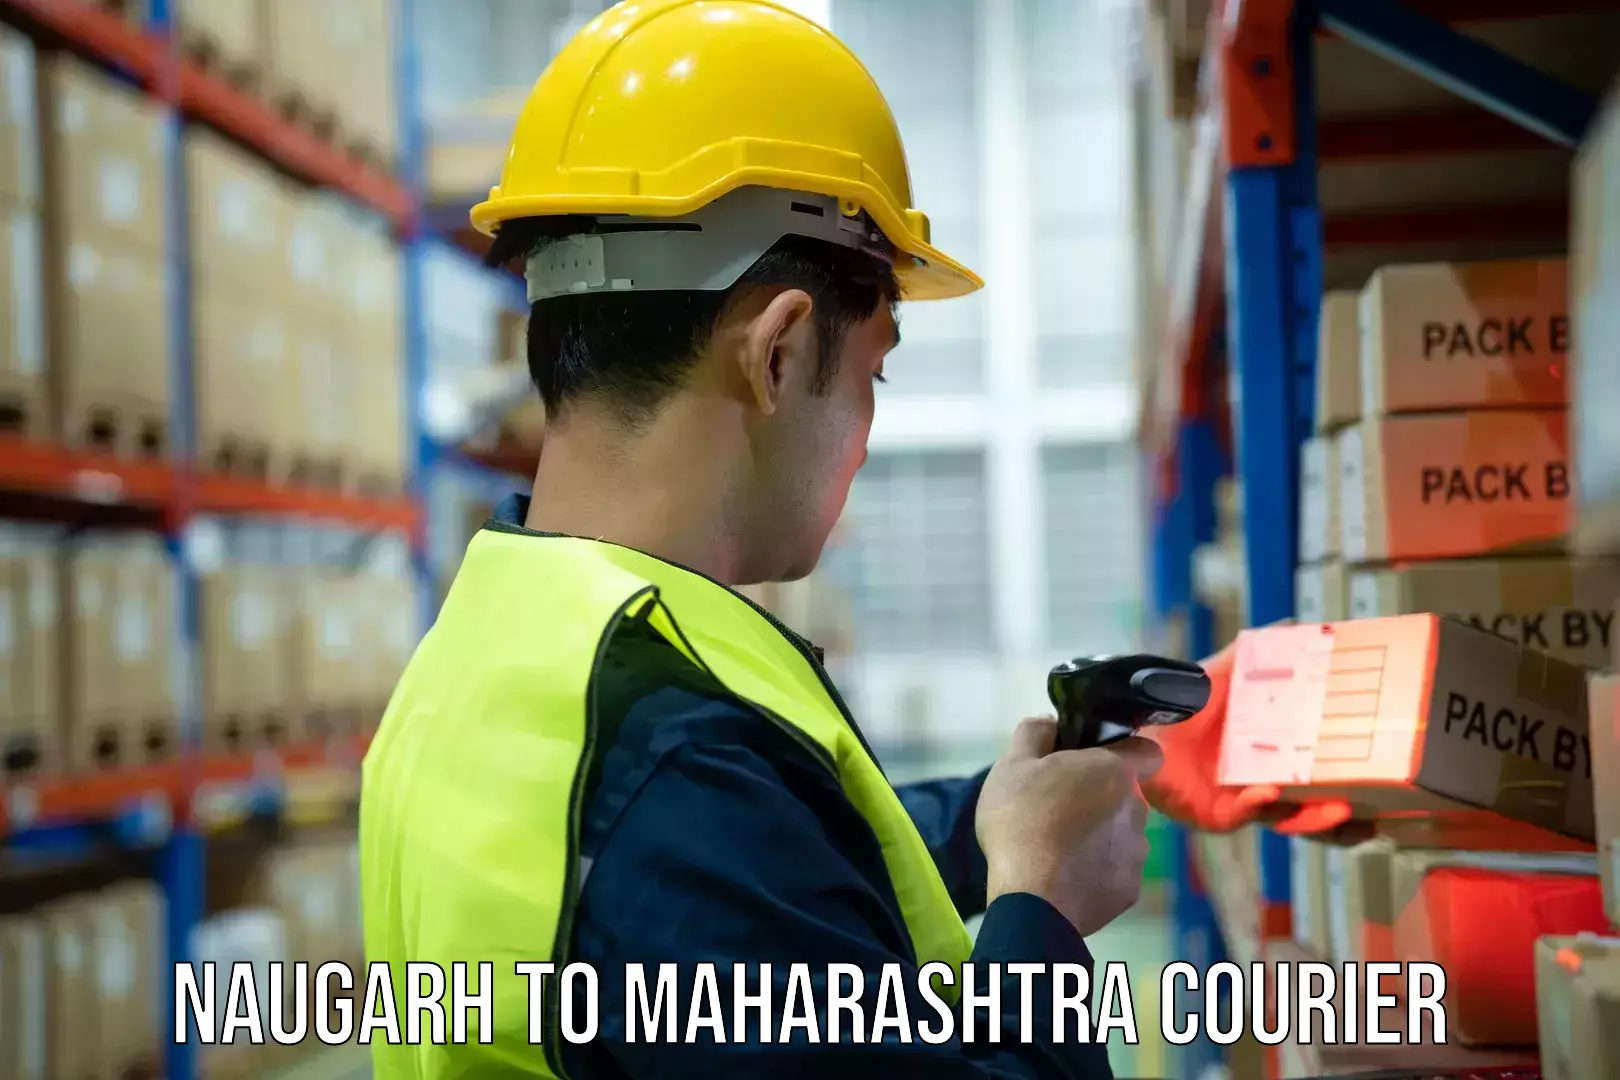 Courier service efficiency Naugarh to Vasai